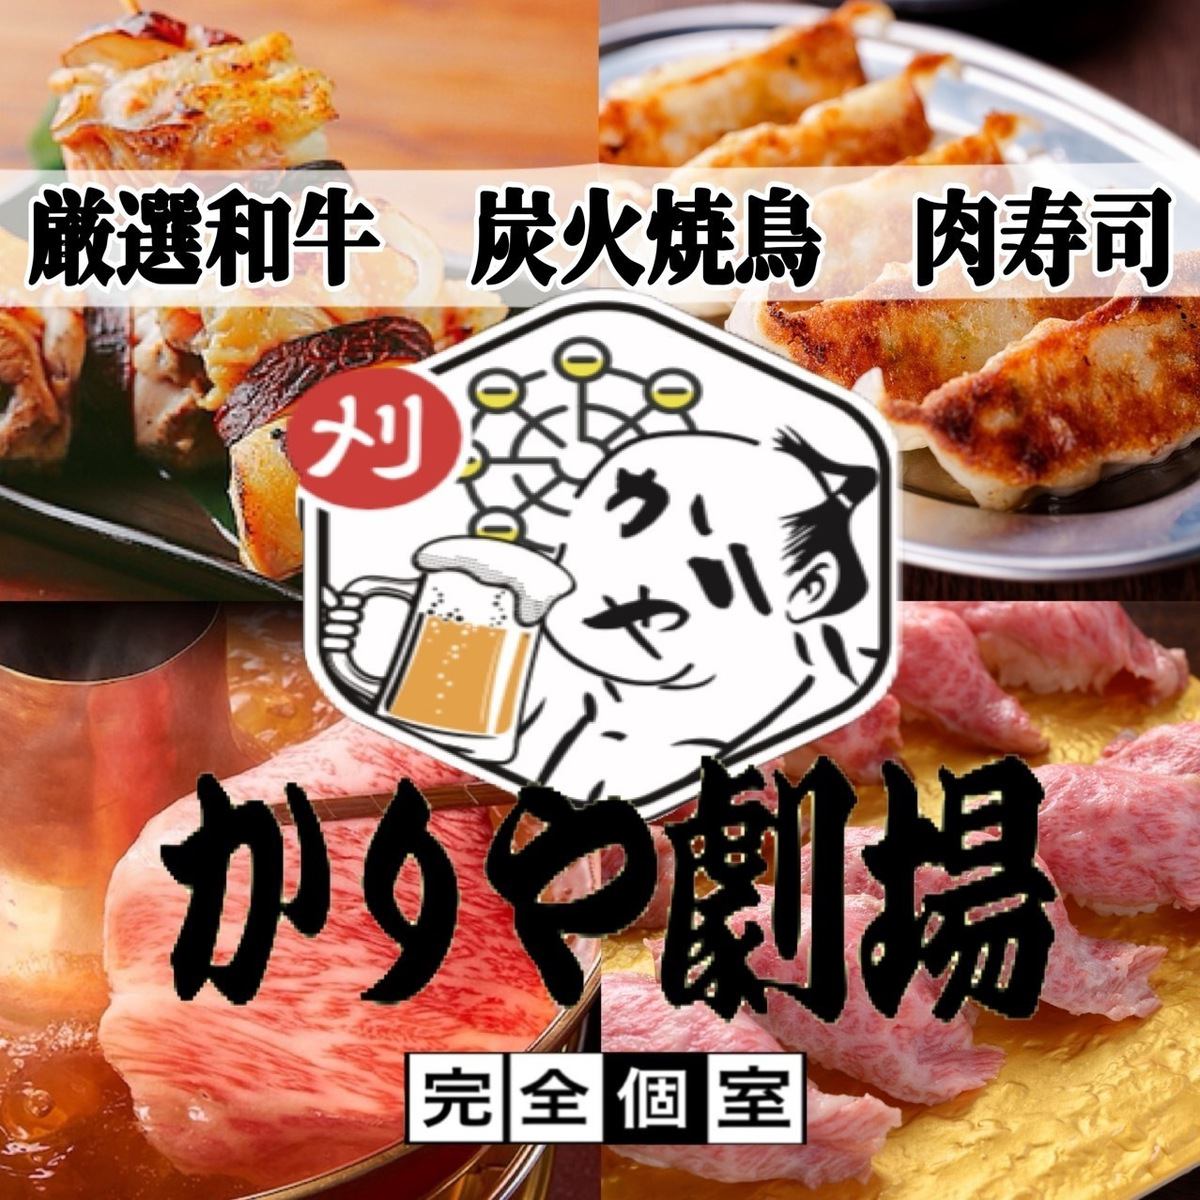 從刈谷站步行1分鐘 烤雞肉串壽司無限暢飲套餐♪ 3小時（共200種）3,000日元～